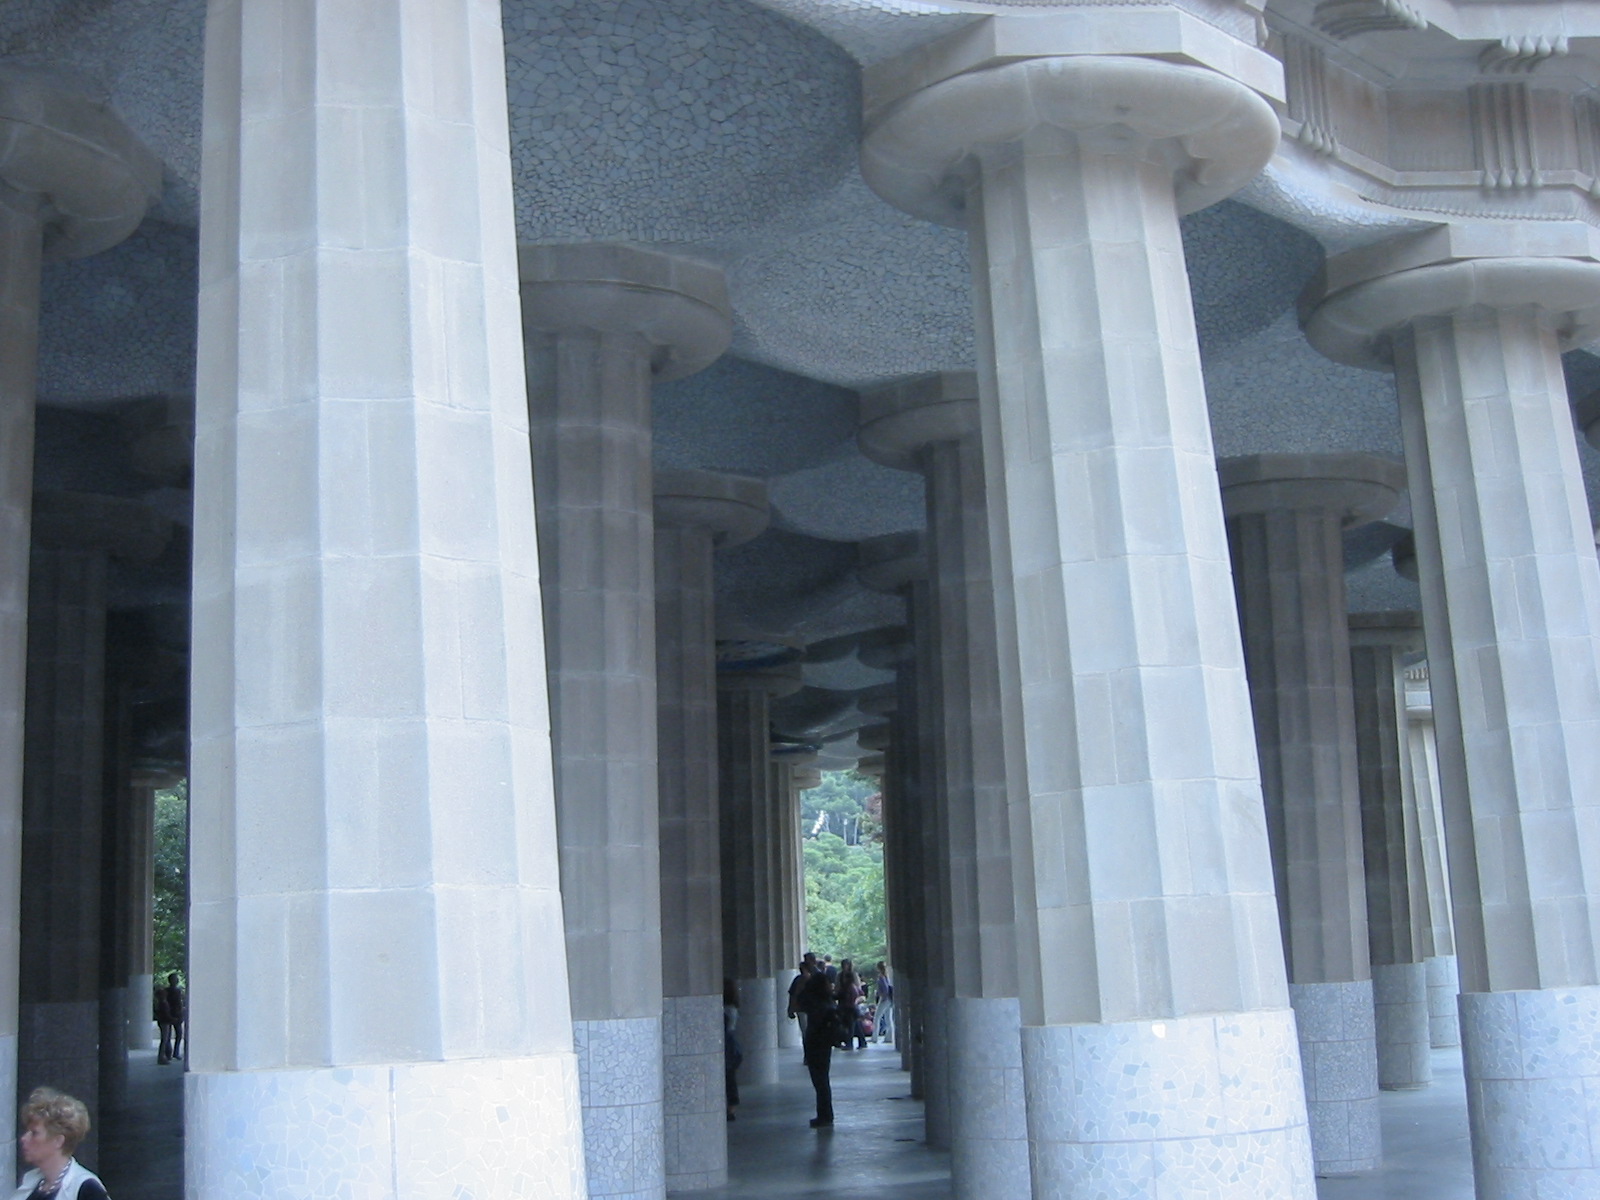 architecture exteriors pillar column gaudi barca barcelona pillars columns